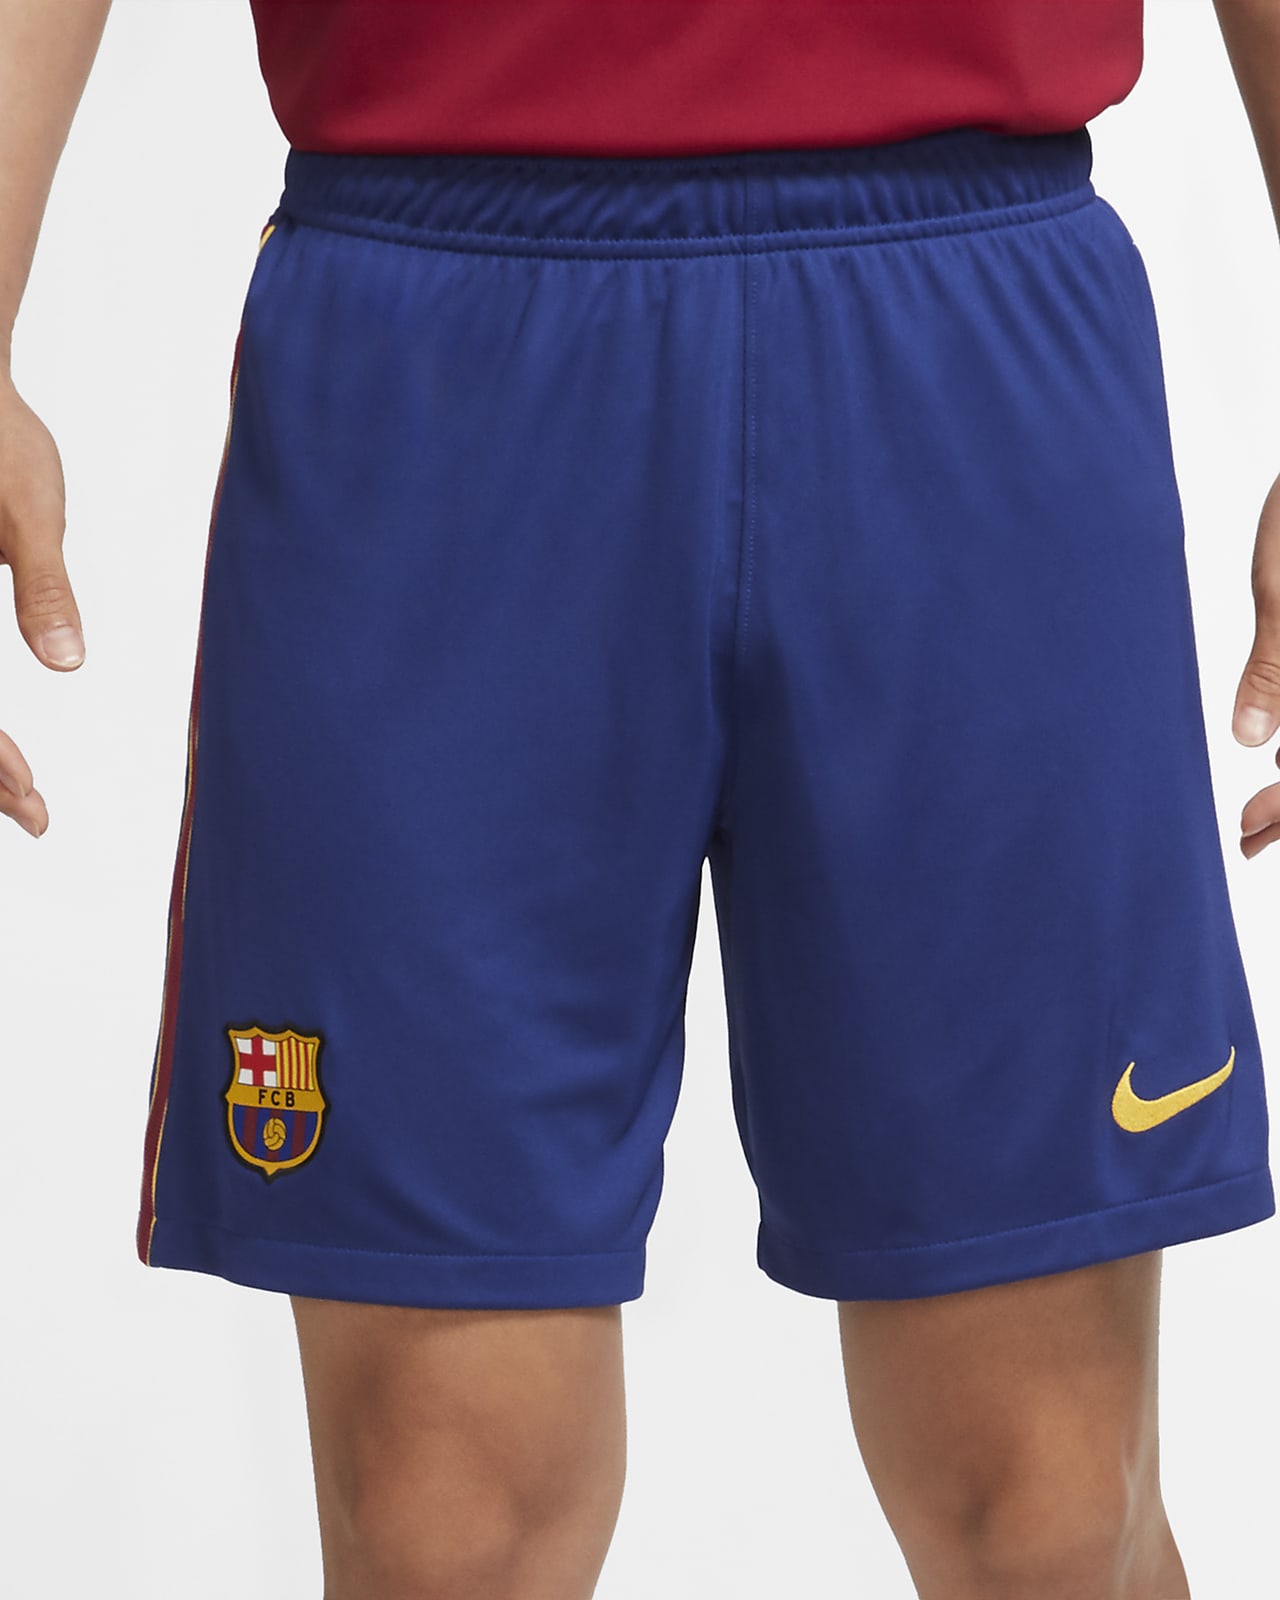 barcelona shorts nike